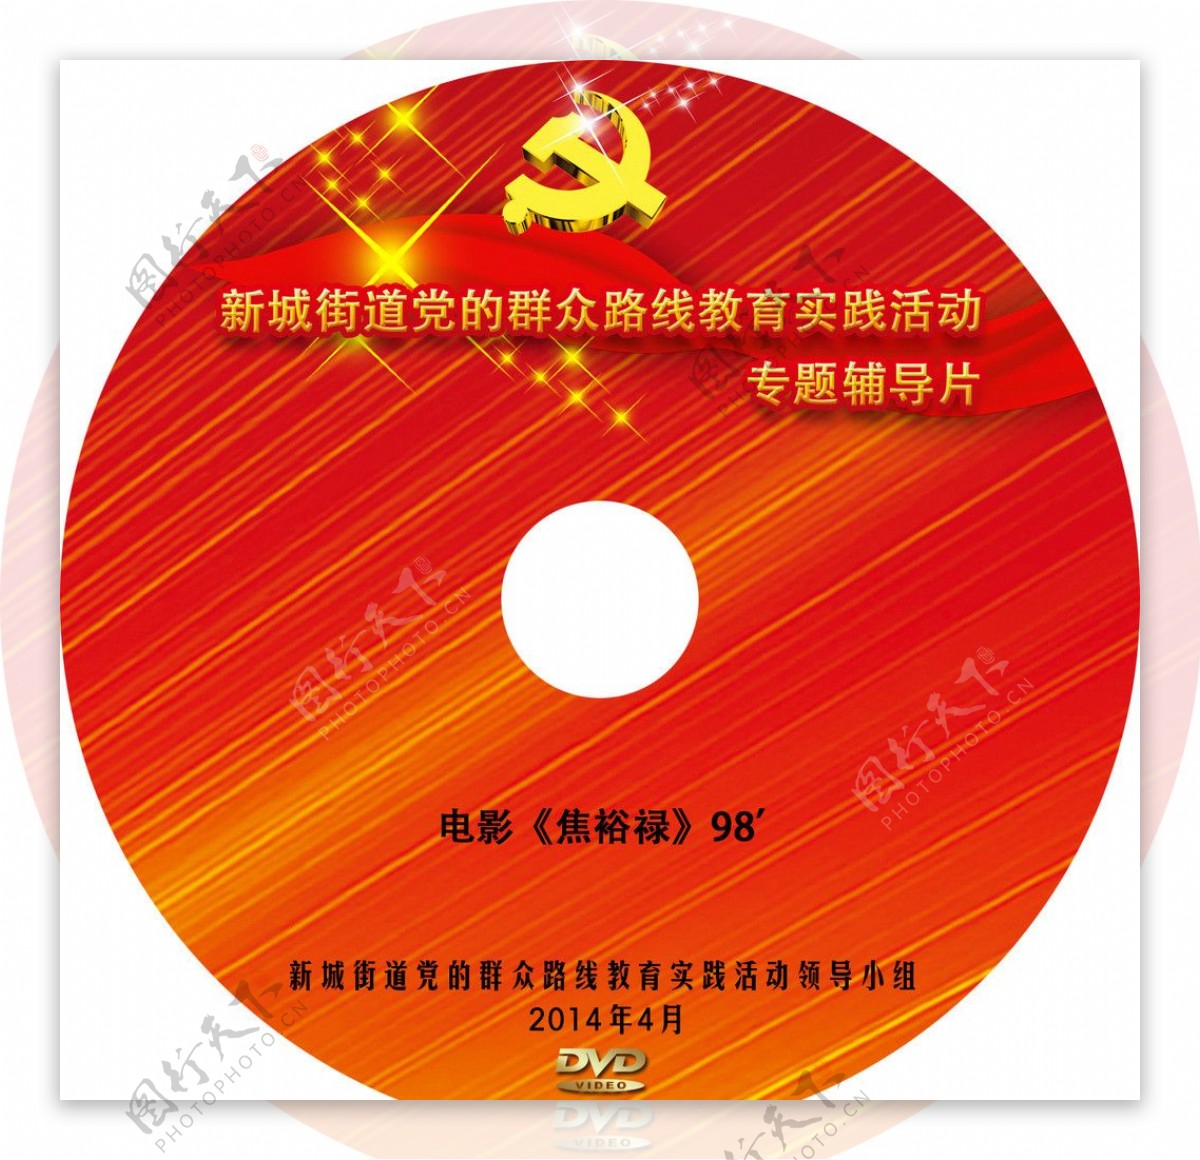 DVD光盘封面设计图片